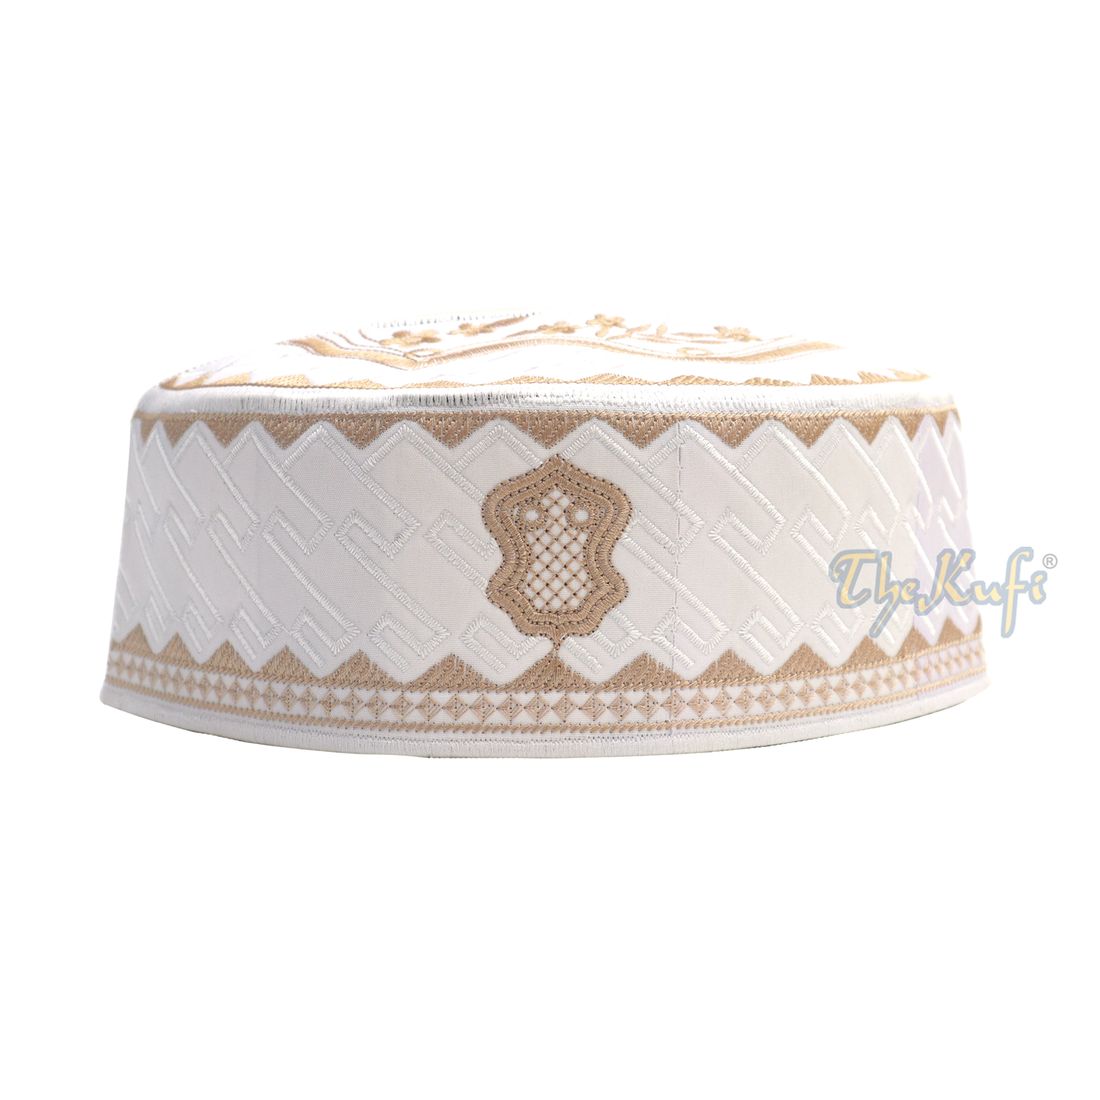 Topi Kufi Sandal Sulam Bertekstur Putih dan Coklat Muda